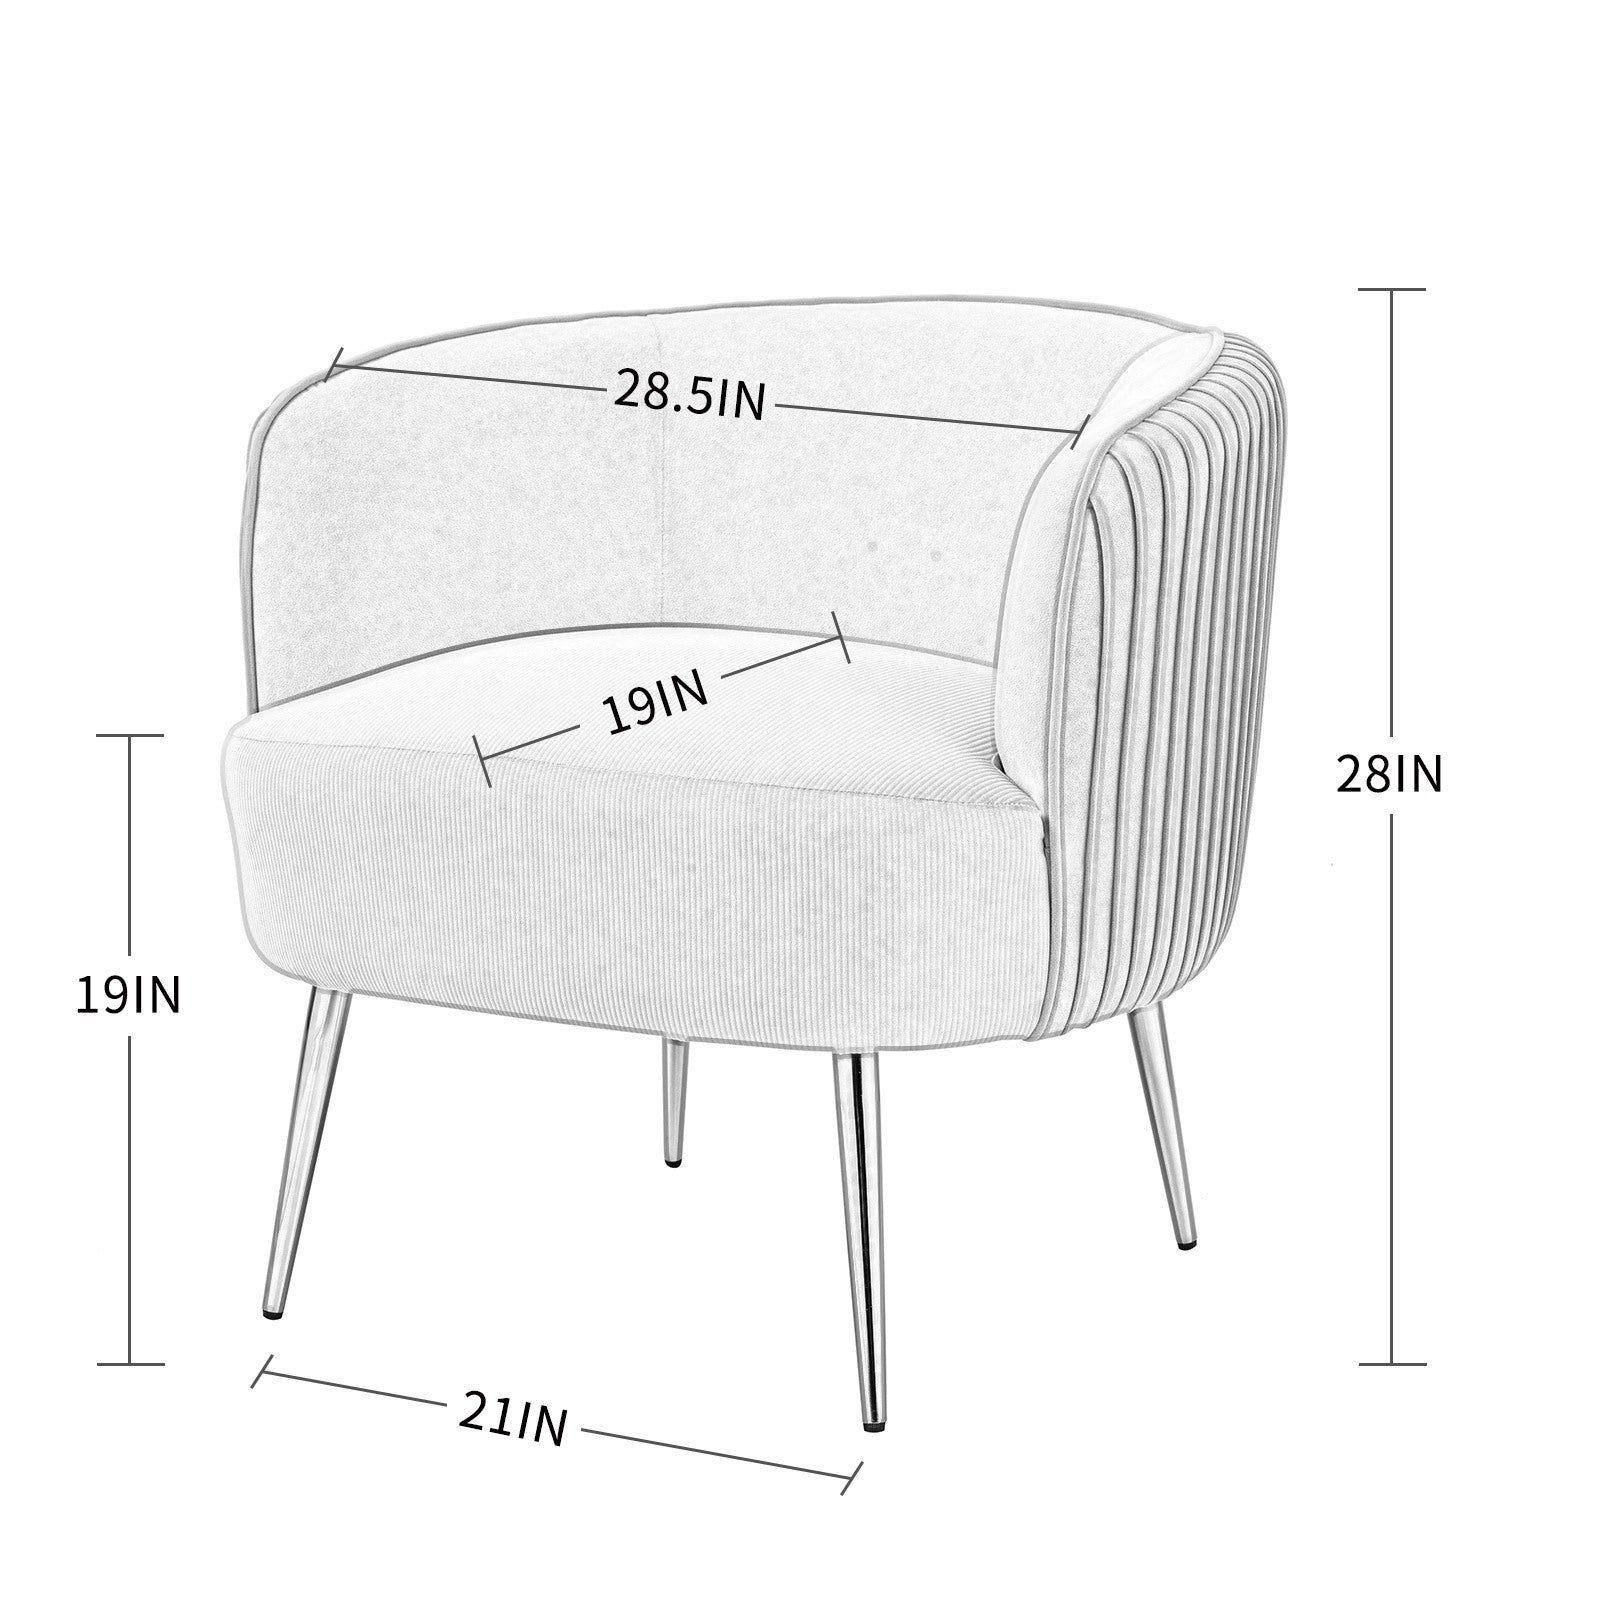 Velvet Accent Upholstered Chair (Purple)